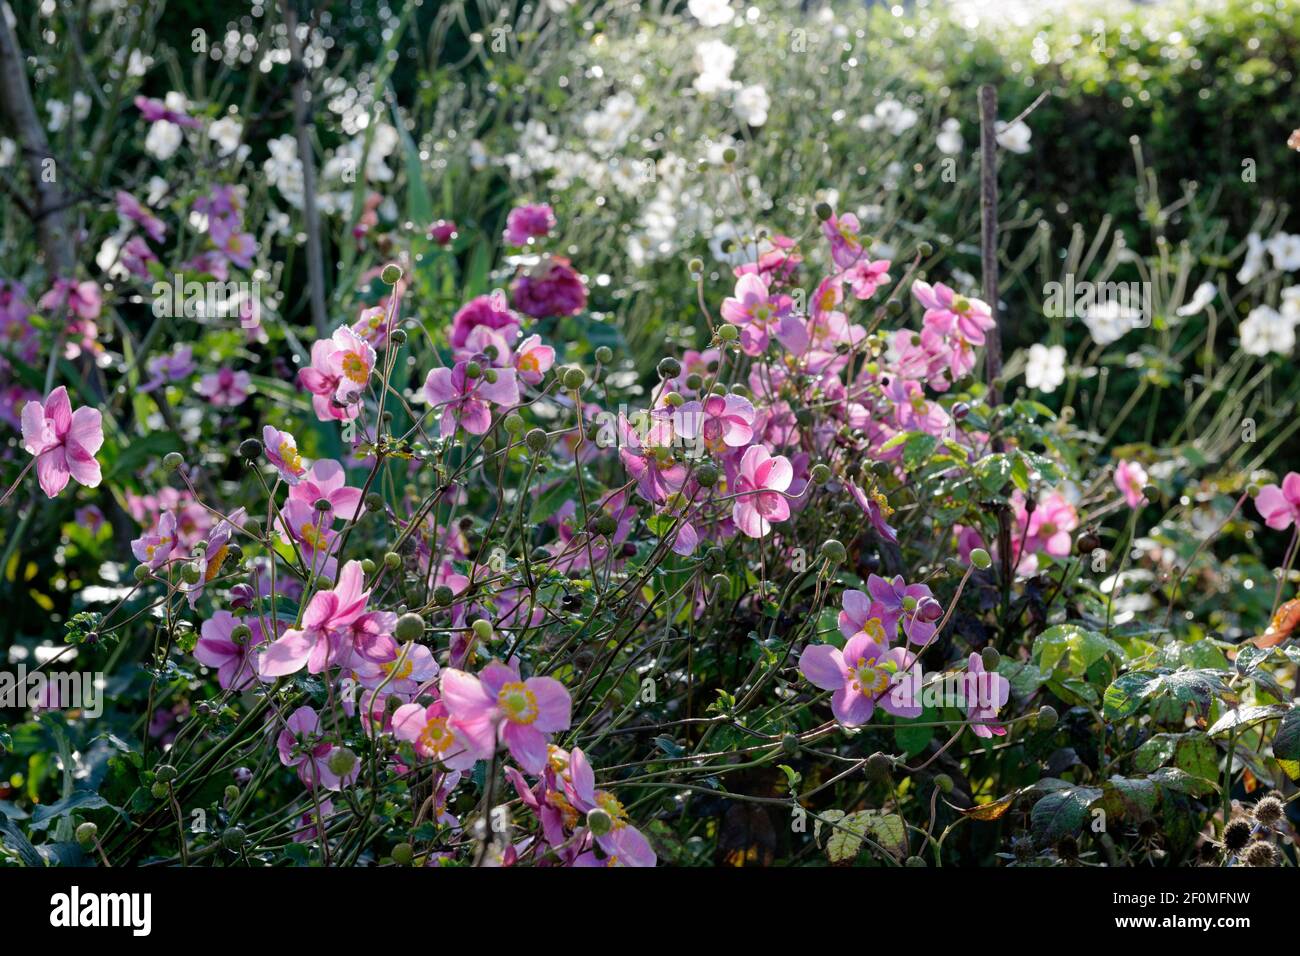 Anemone giapponese a fiore viola "abbondanza di Hadspen" in primo piano. Nonostante non essere imbevuti, i gambi rigidi e i fiori sono sopravvissuti venti forti. Foto Stock